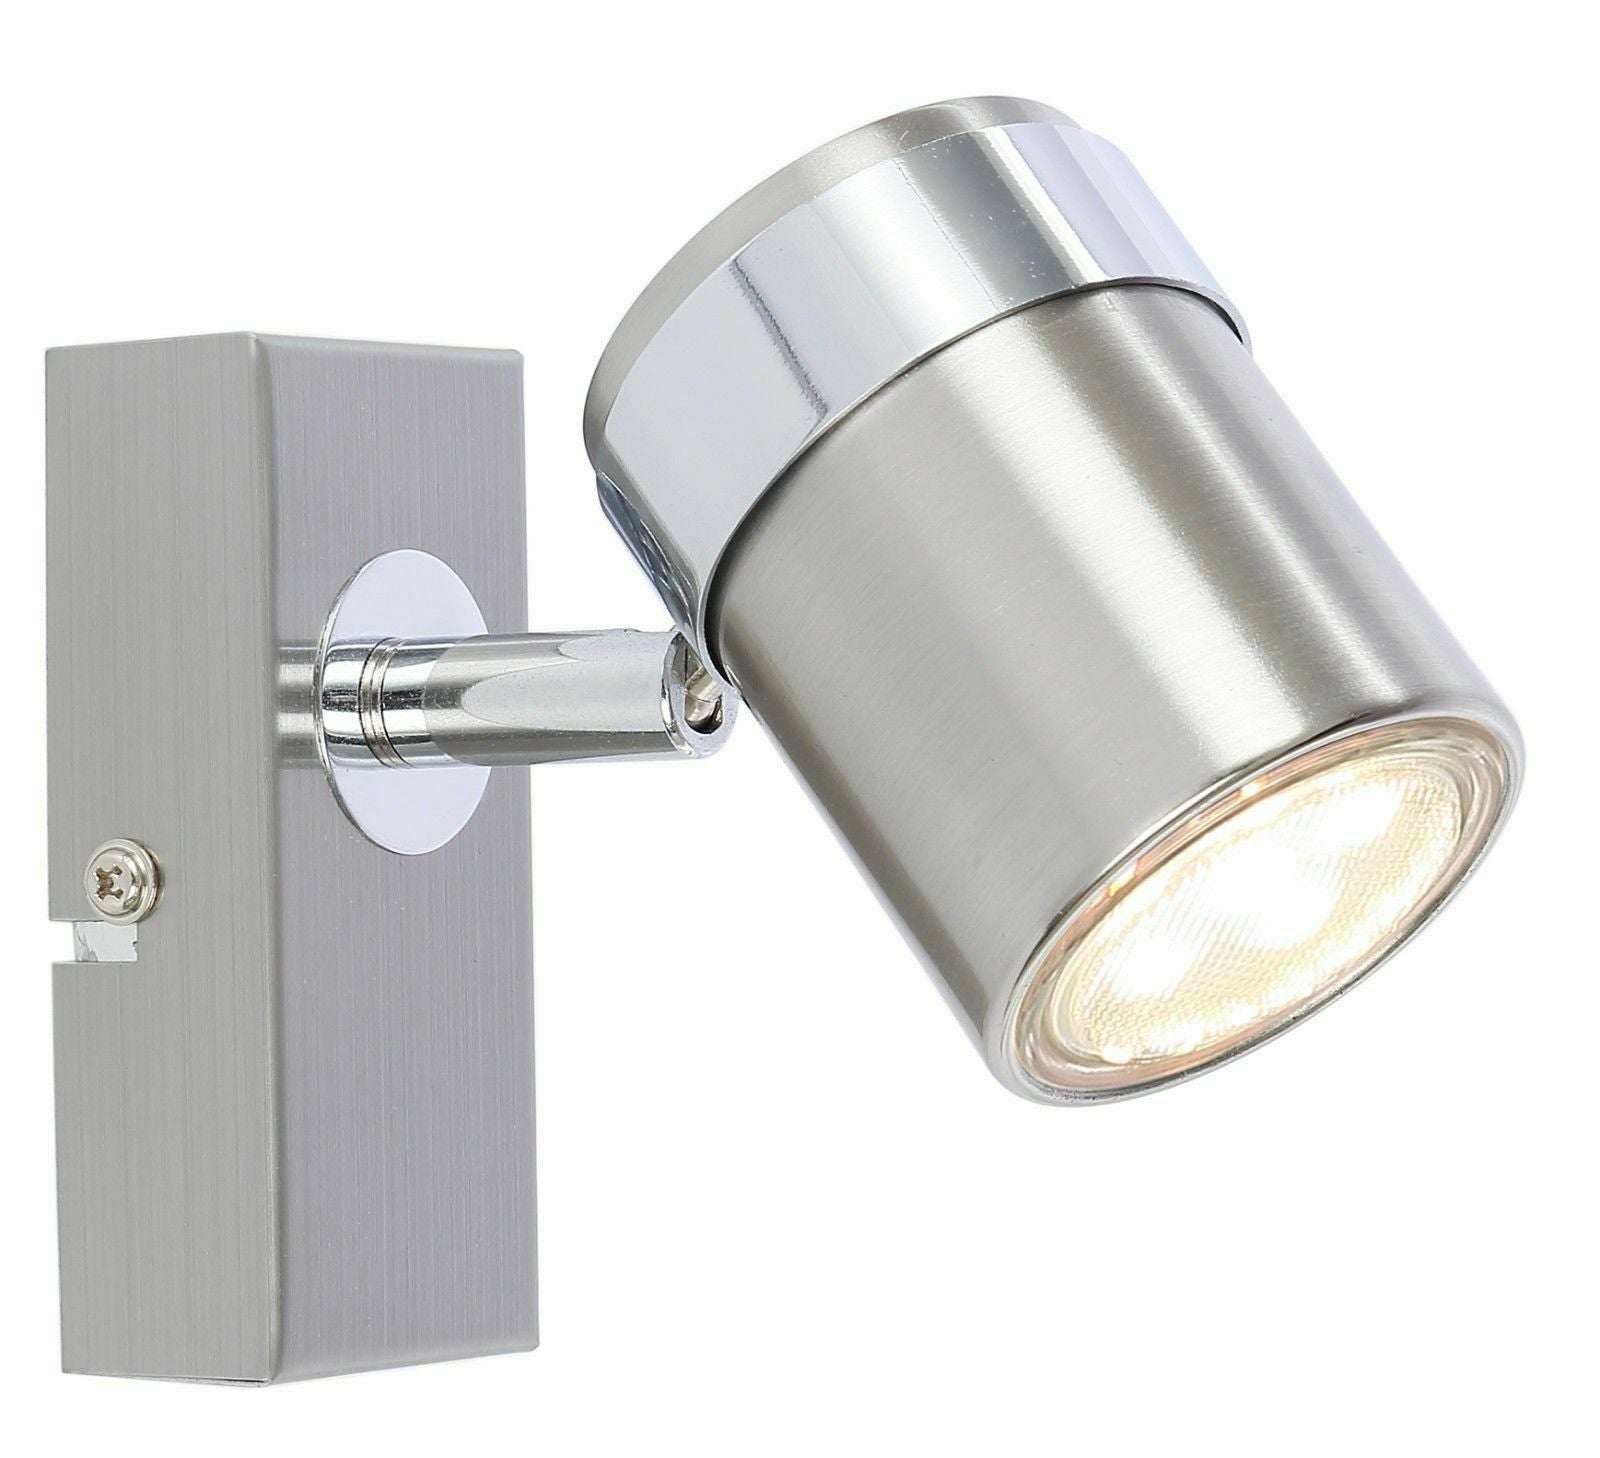 Single LED Ceiling or Wall Spotlight Spot Lights Fittings  (Chrome or Satin) UKEW